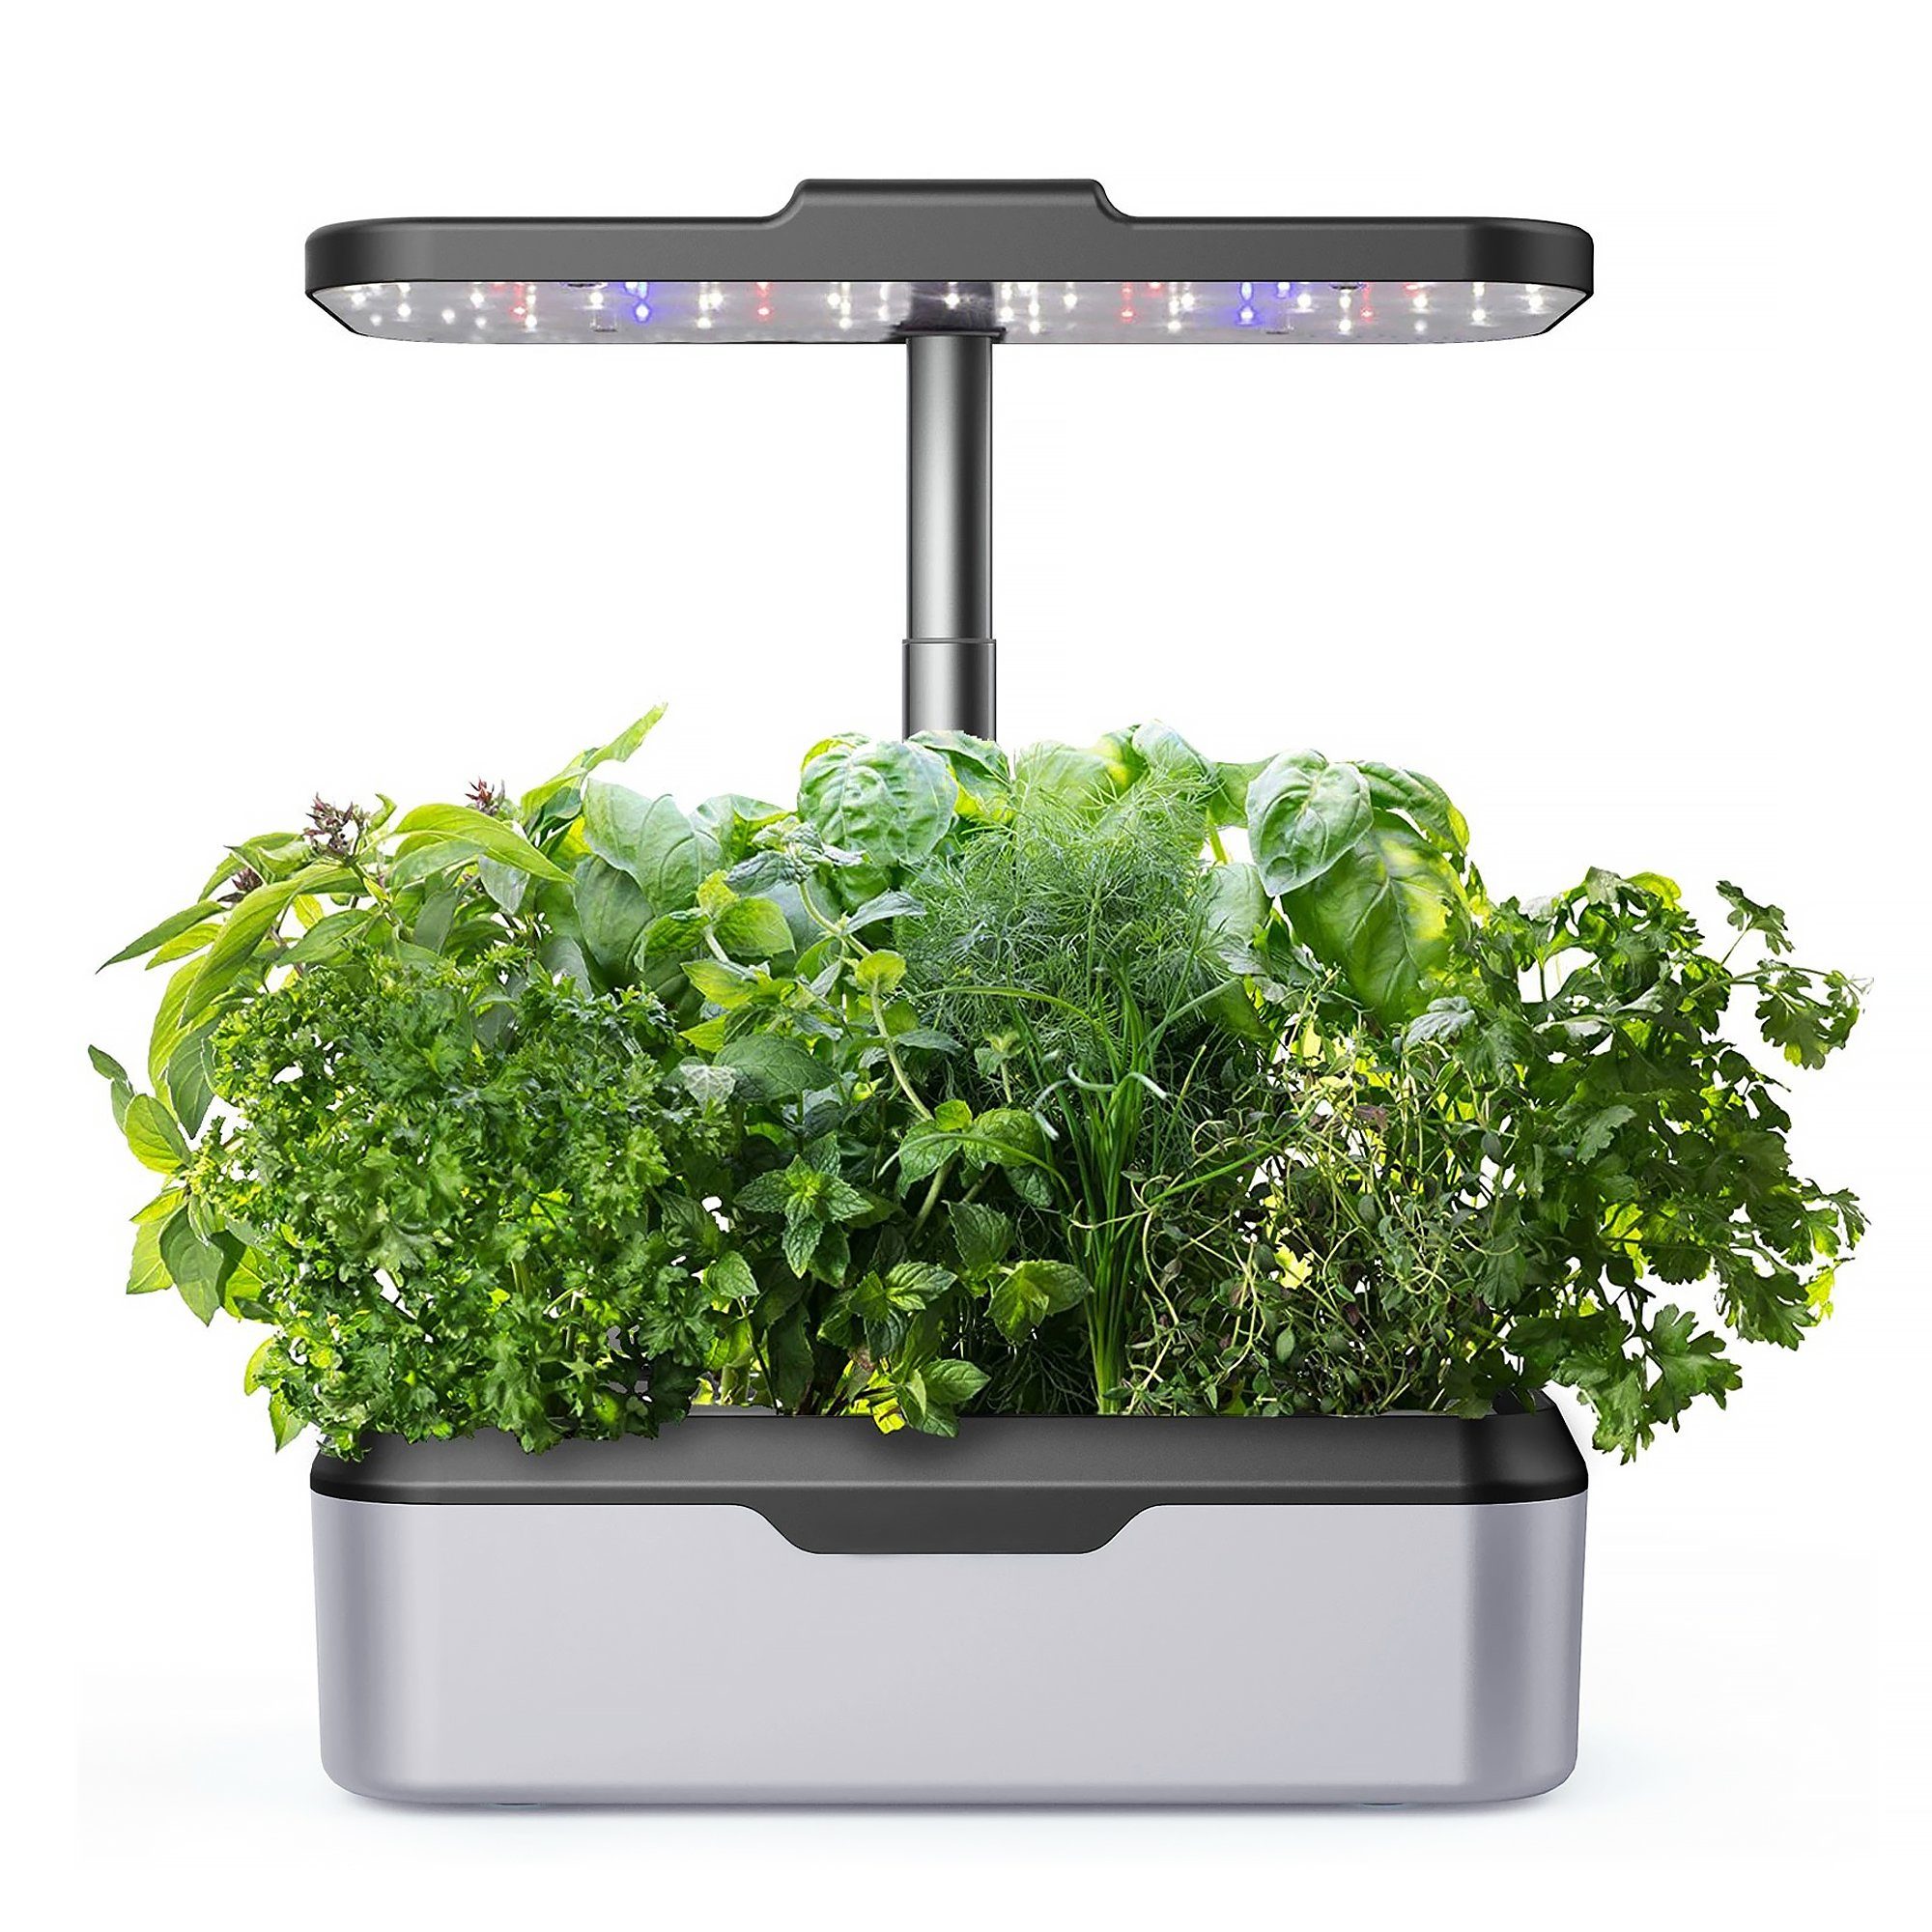 St., LED-Pflanzenlampe Garden,mit Packung) HomeGuru Pflanzkübel Indoor Hydroponische (1 Anzuchtsysteme,Smart